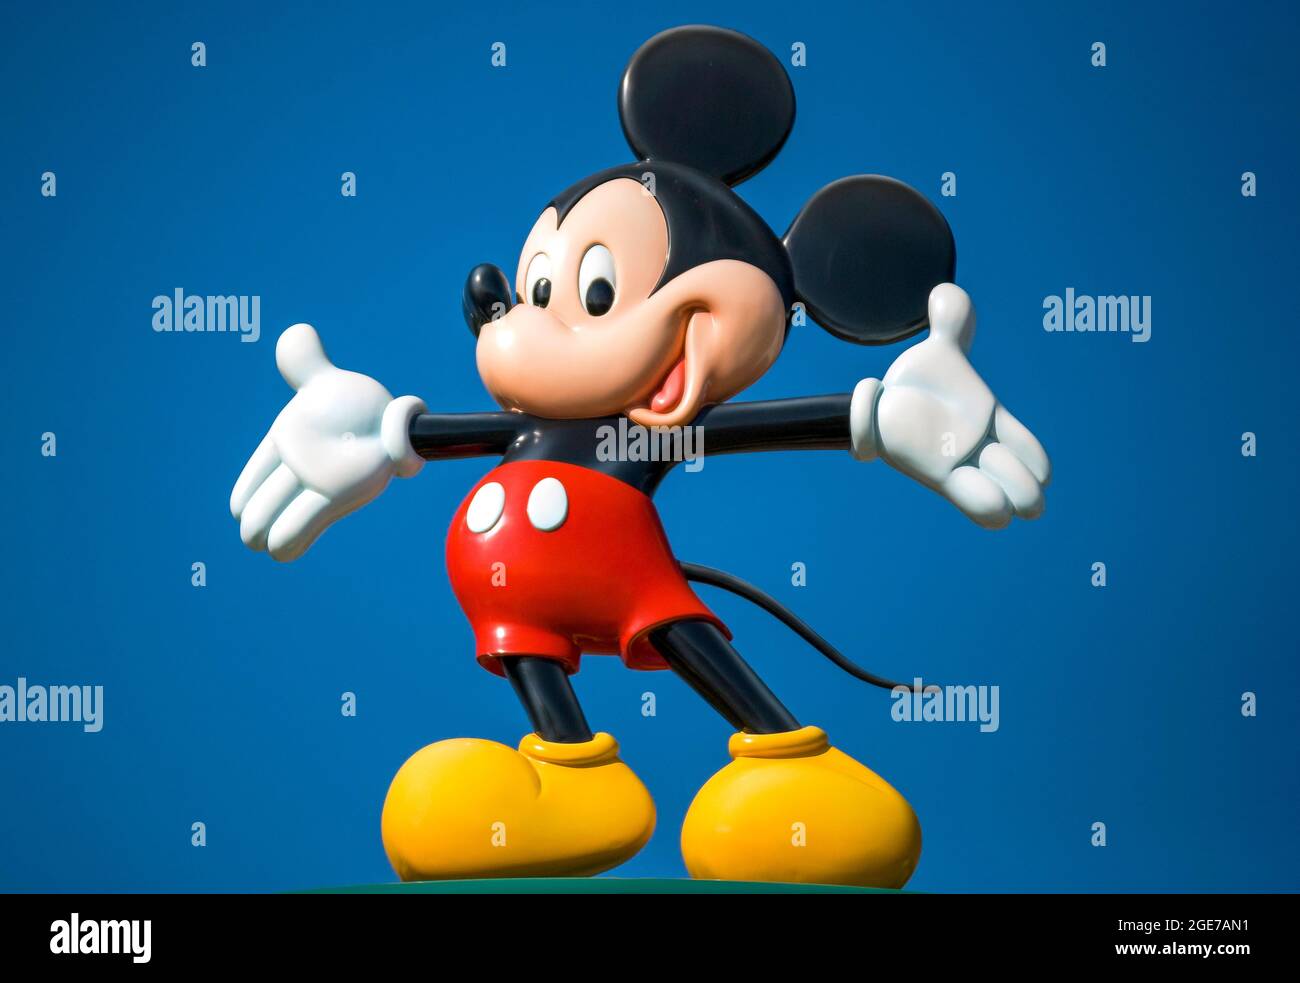 Mickey Mouse character at Hong Kong Disneyland Resort entrance, Lantau Island, Hong Kong, People's Republic of China Stock Photo